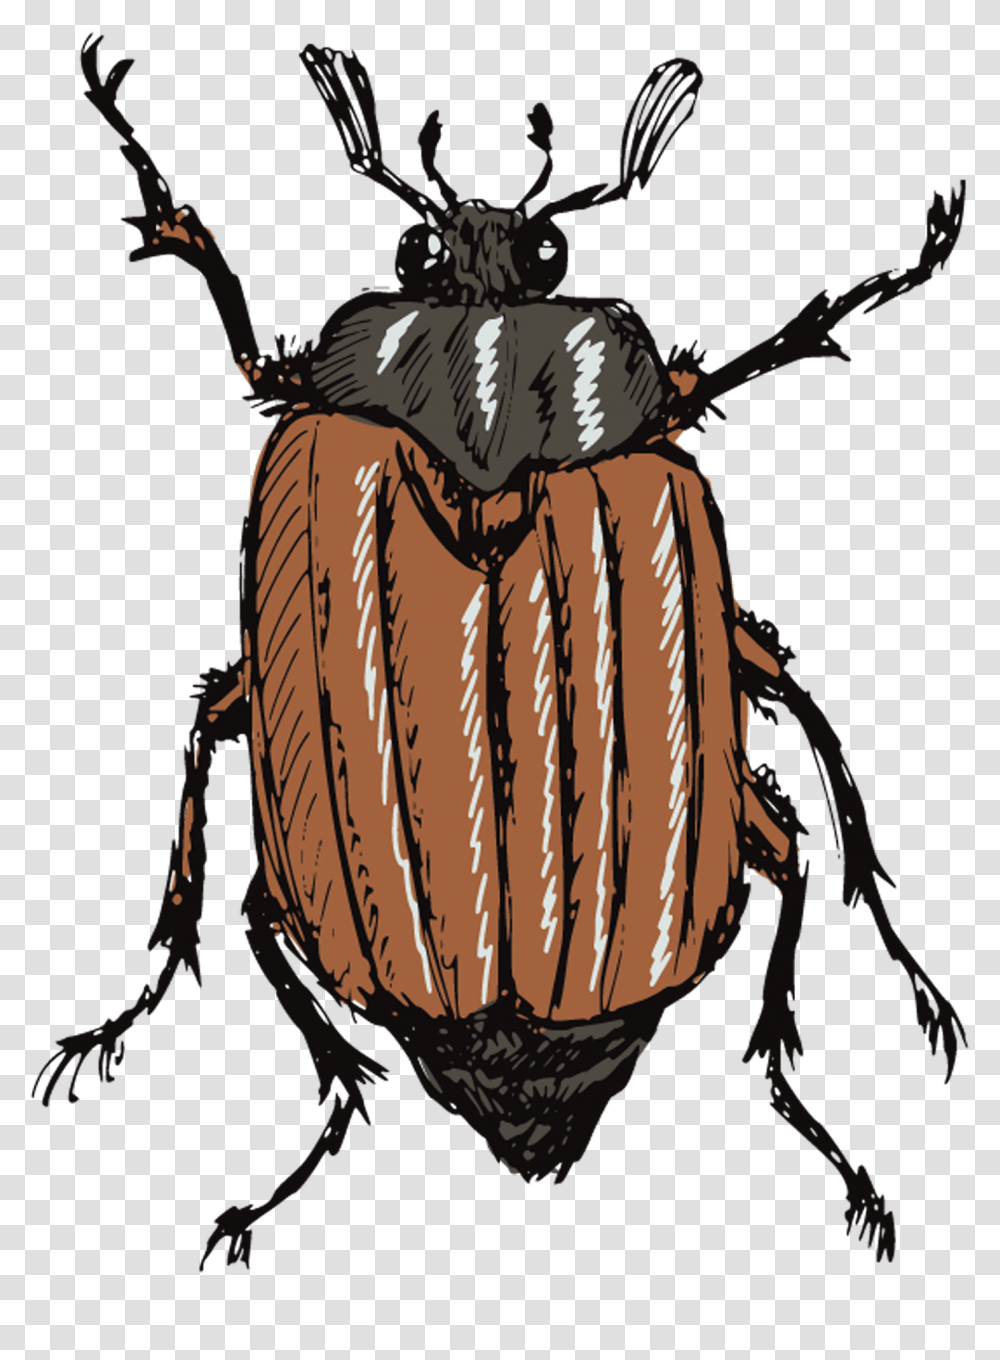 Gusano Animado Y Escarabajo, Animal, Insect, Invertebrate, Flying Transparent Png